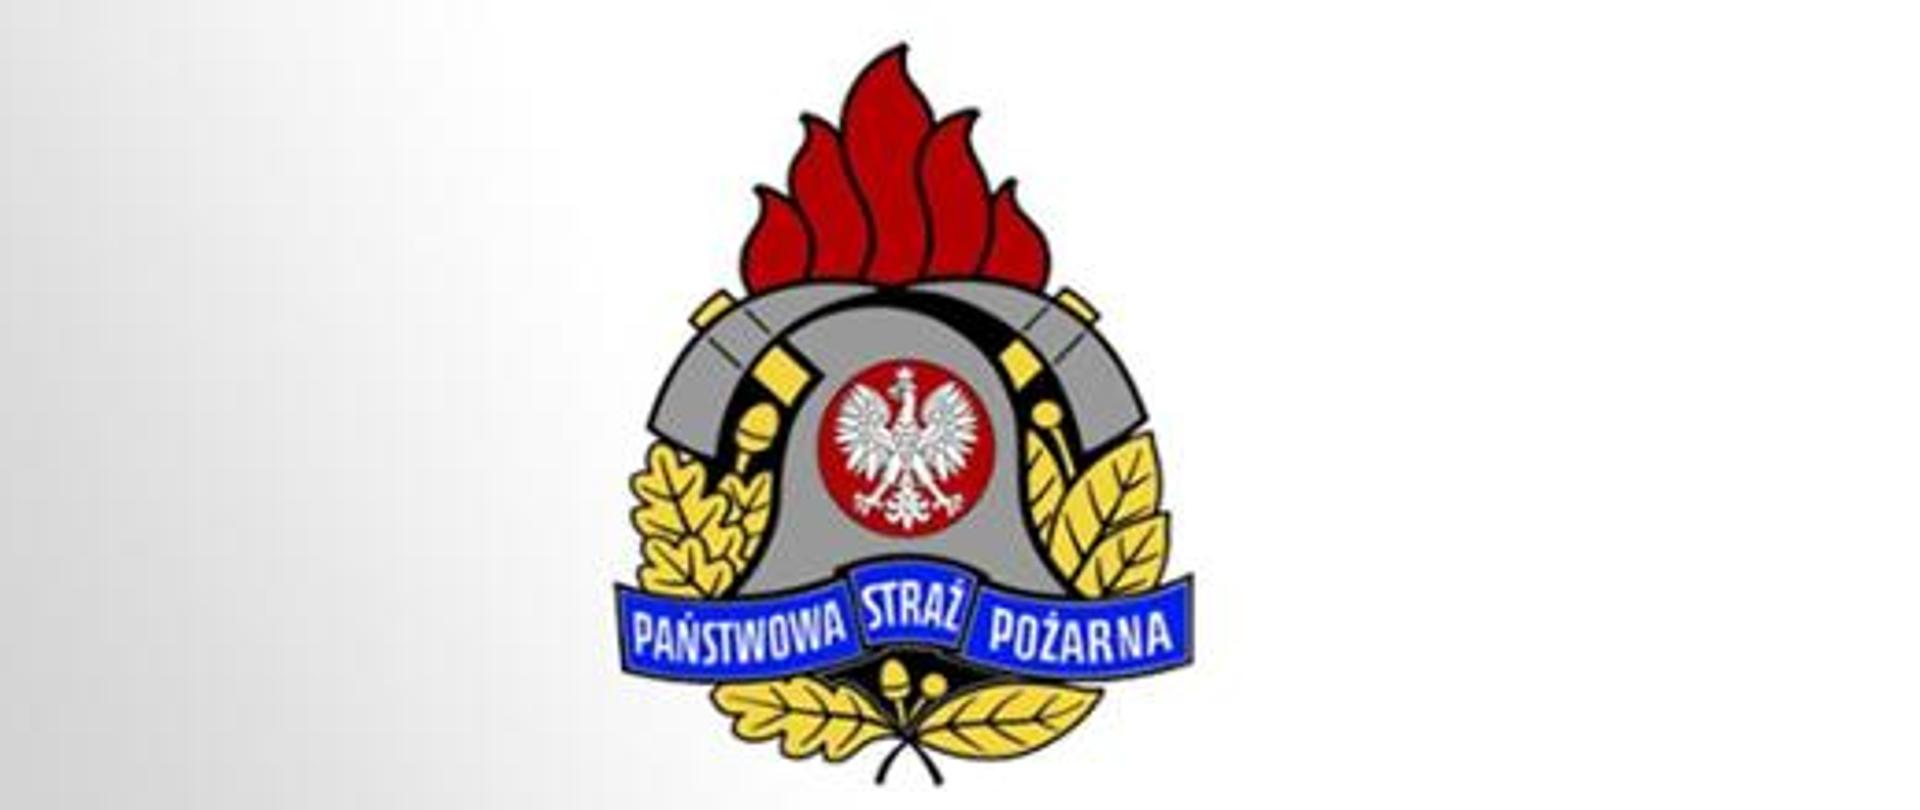 Zdjęcie przedstawia kolorowe logo Państwowej Straży Pożarnej